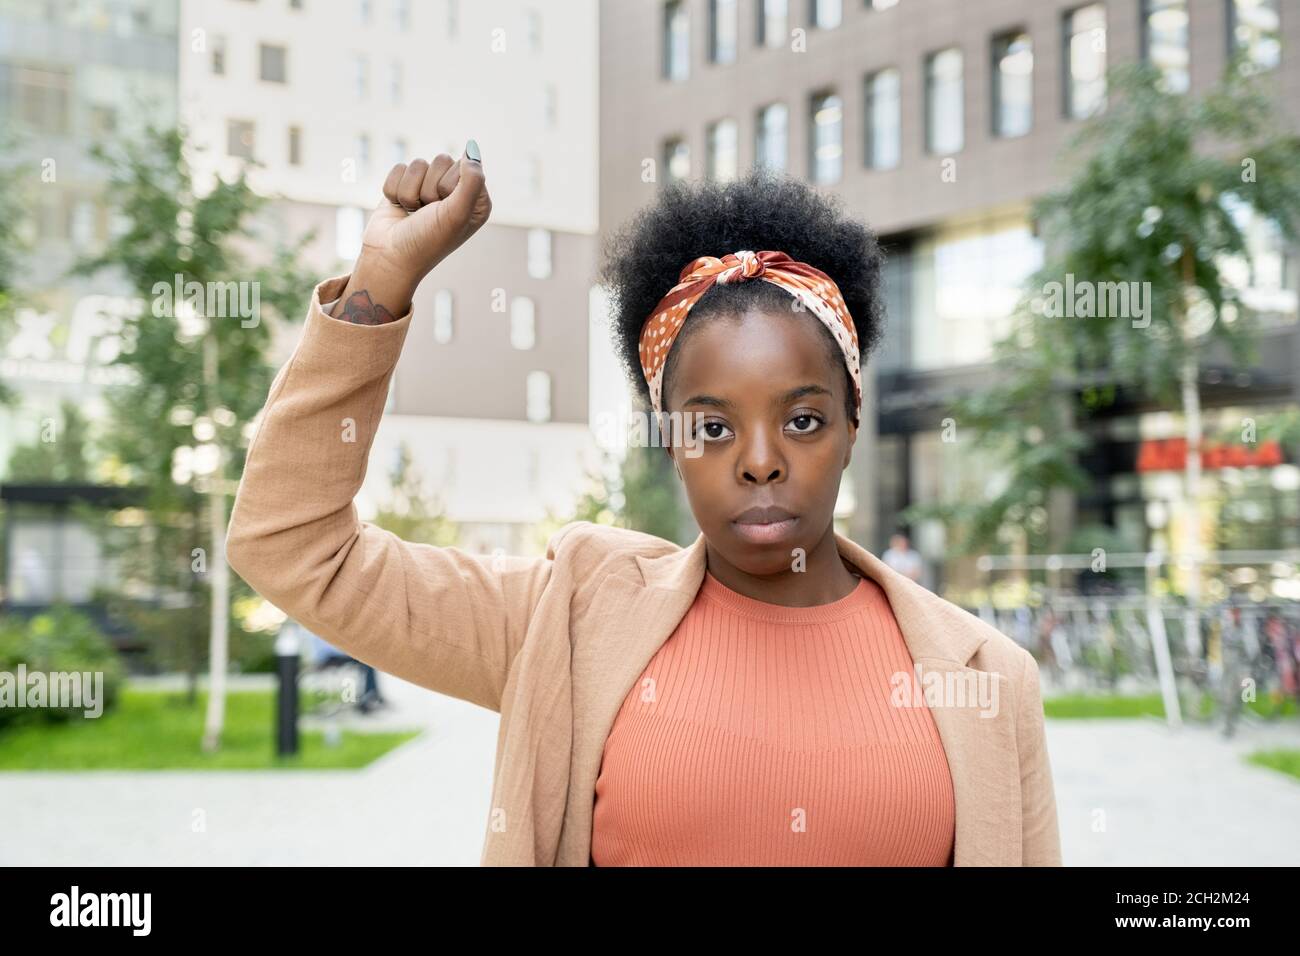 Joven empresaria contemporánea de etnia africana manteniendo el brazo derecho levantado Foto de stock